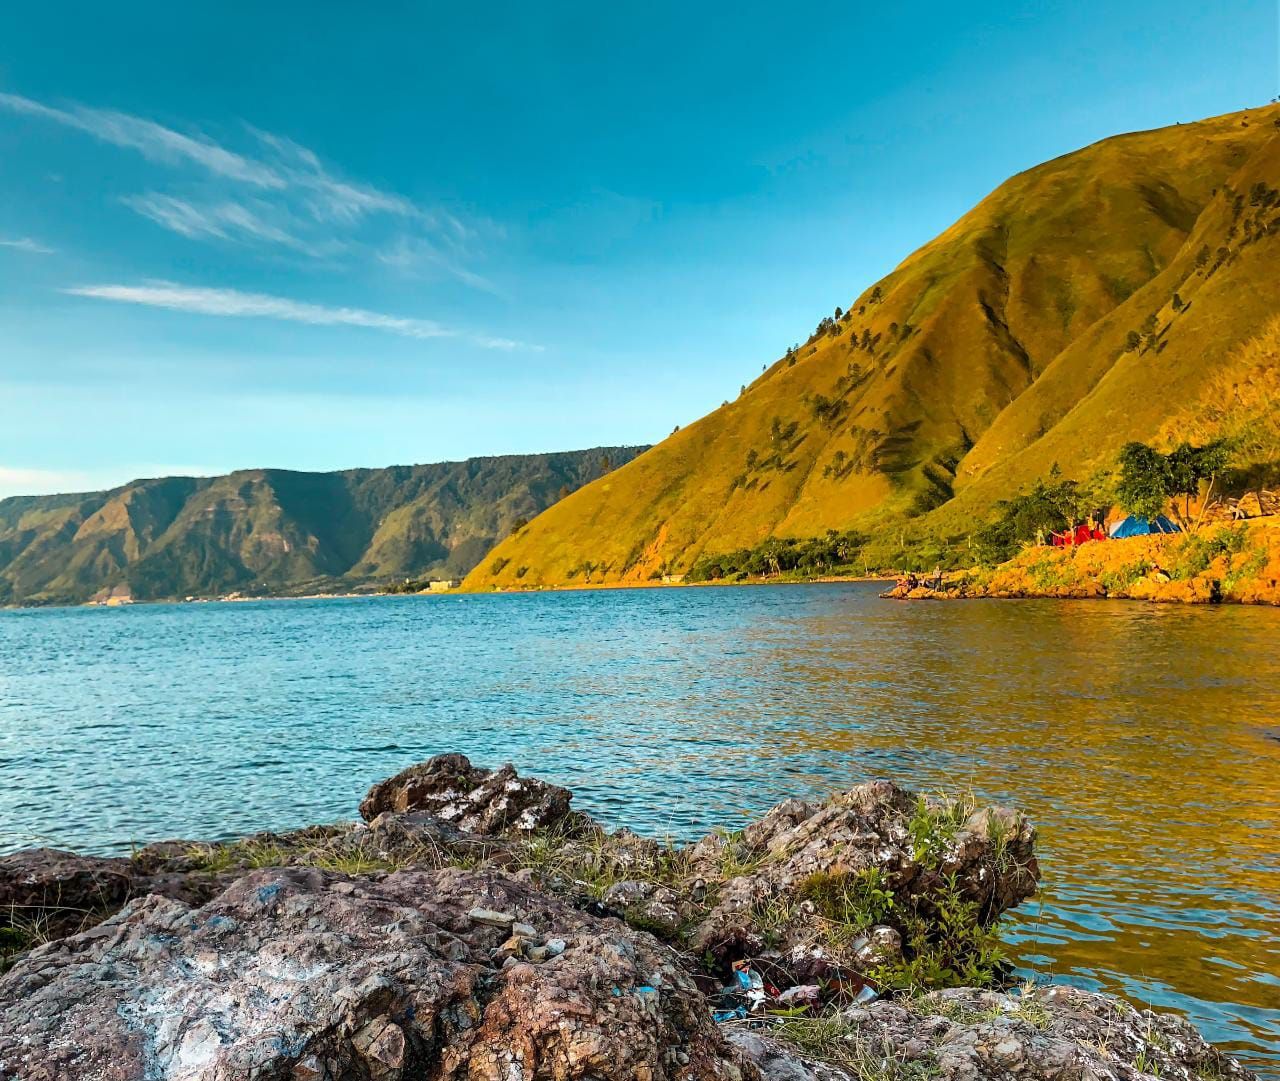 Pesona keindahan desa wisata Danau Toba */ Bagoes Ilhamy / Unsplash